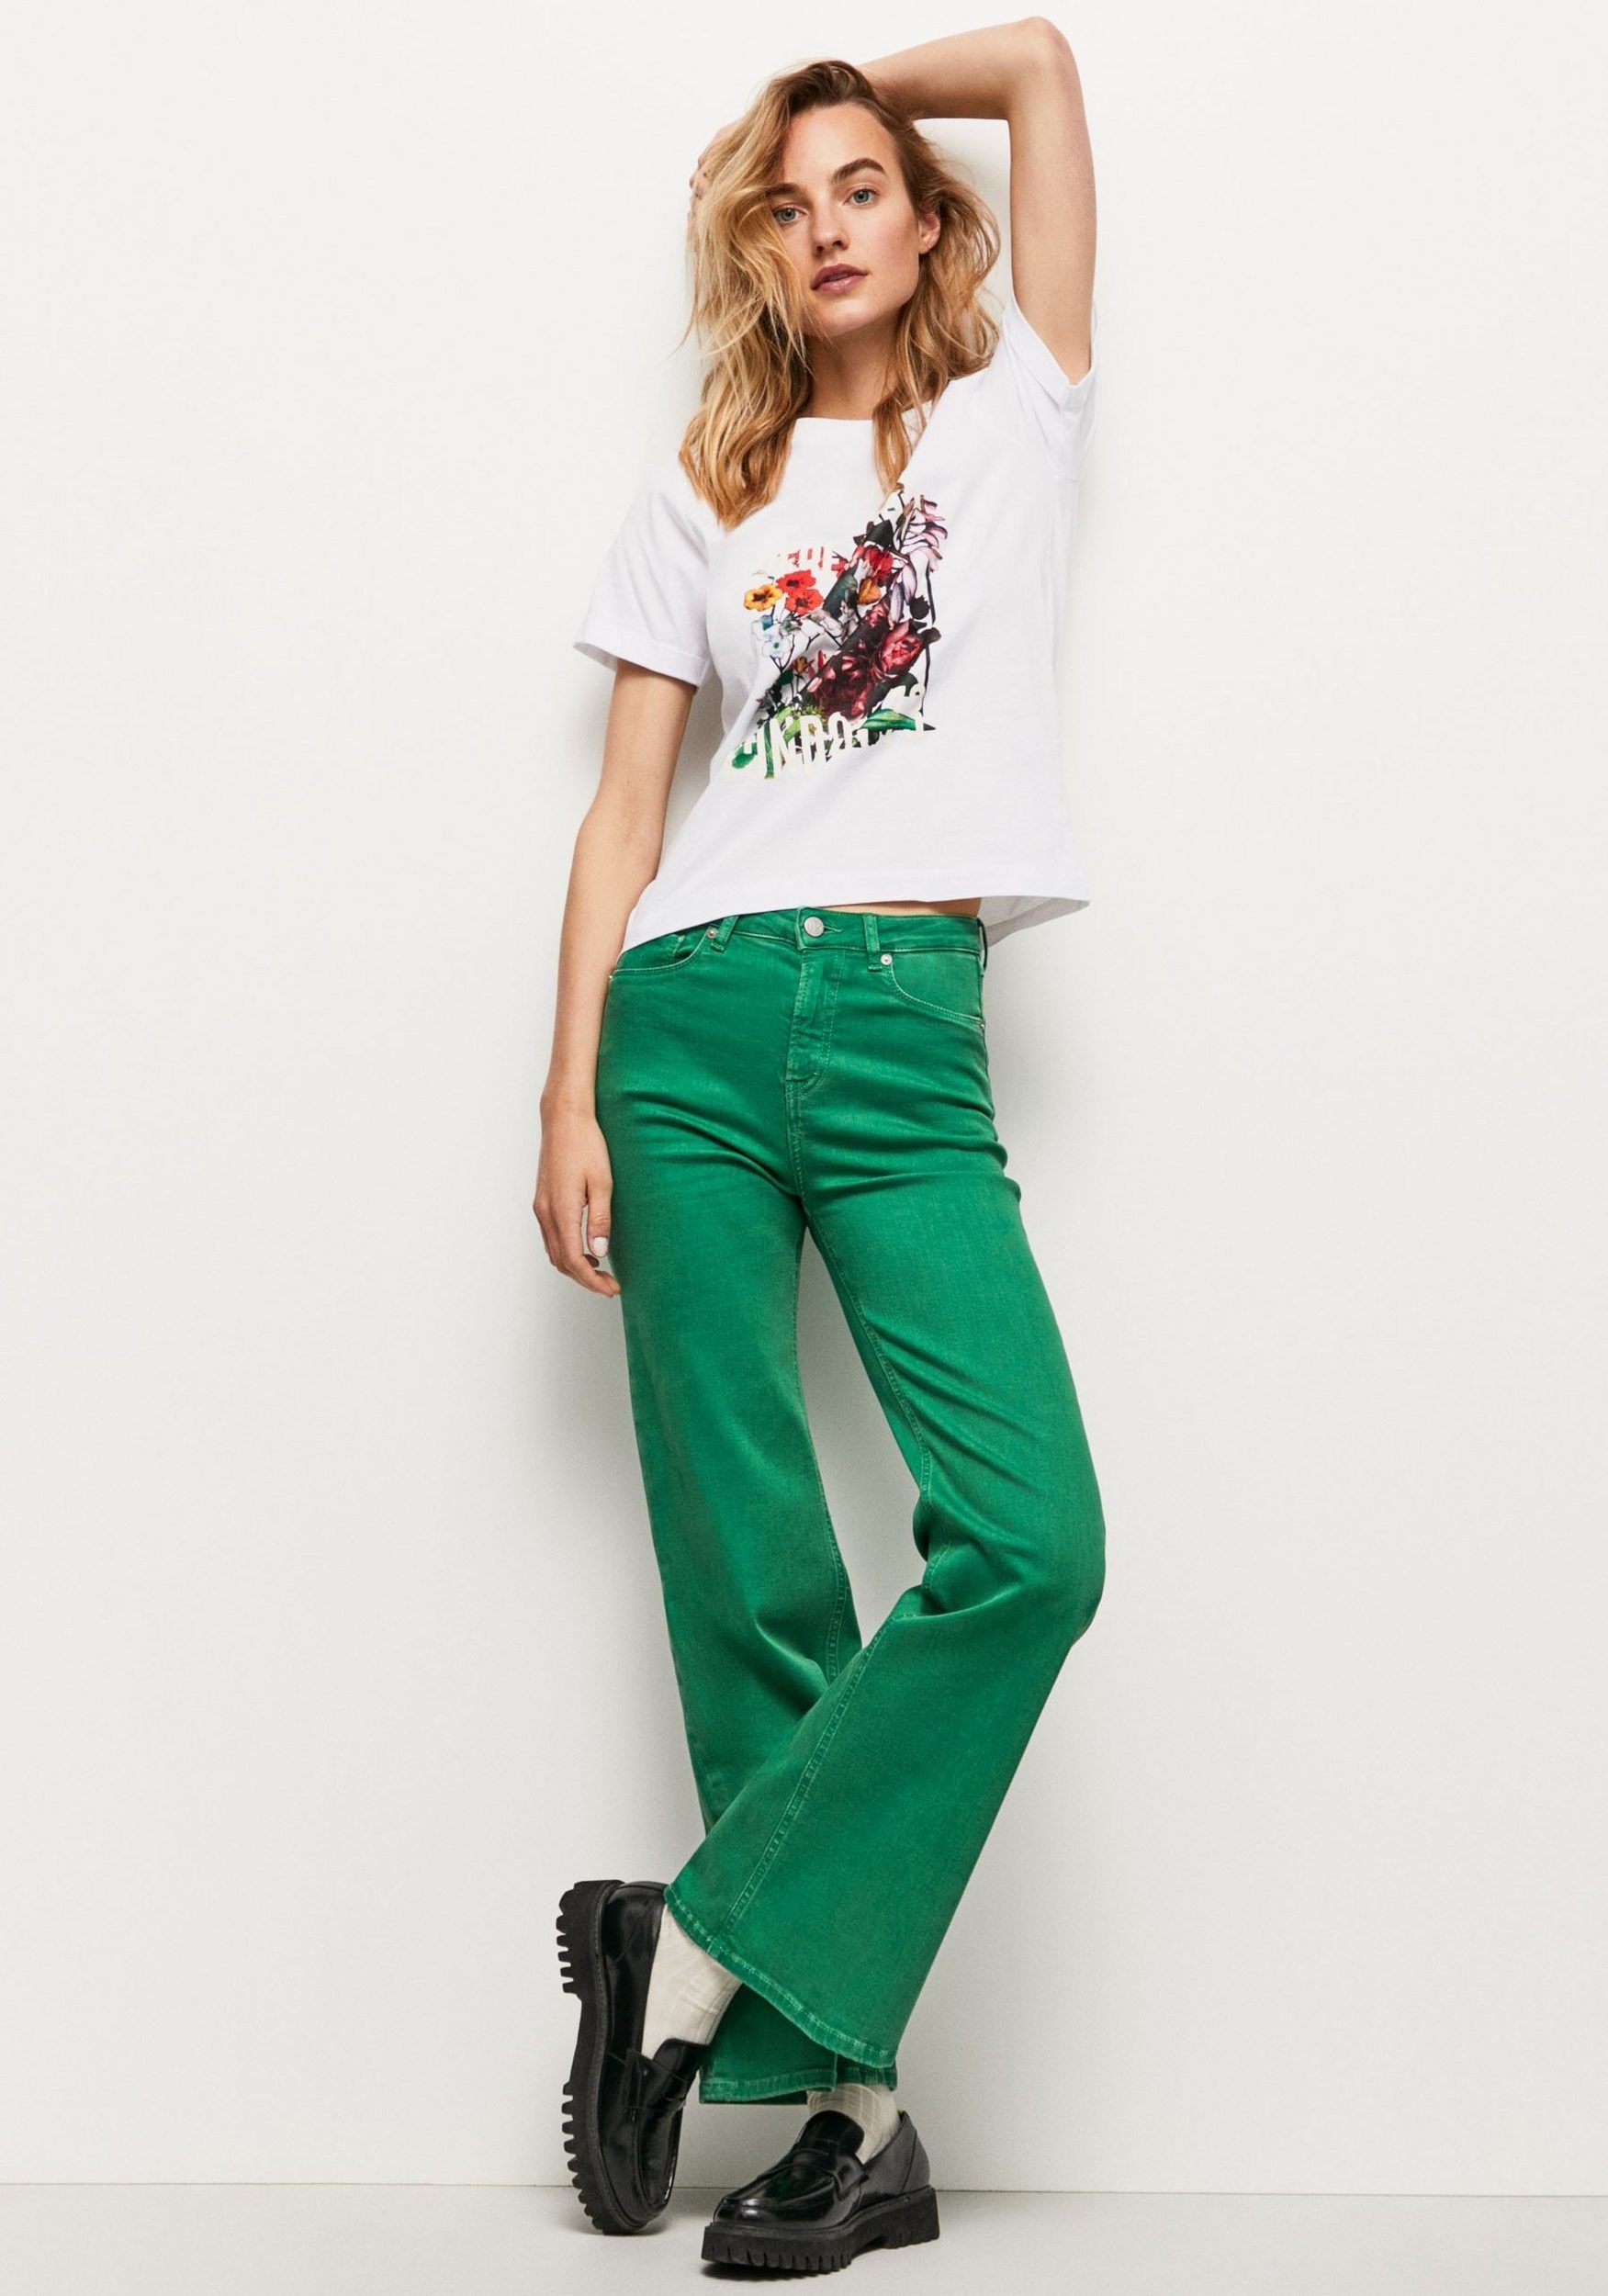 Pepe markentypischem Frontprint in T-Shirt Passform tollem und mit Jeans oversized 800WHITE